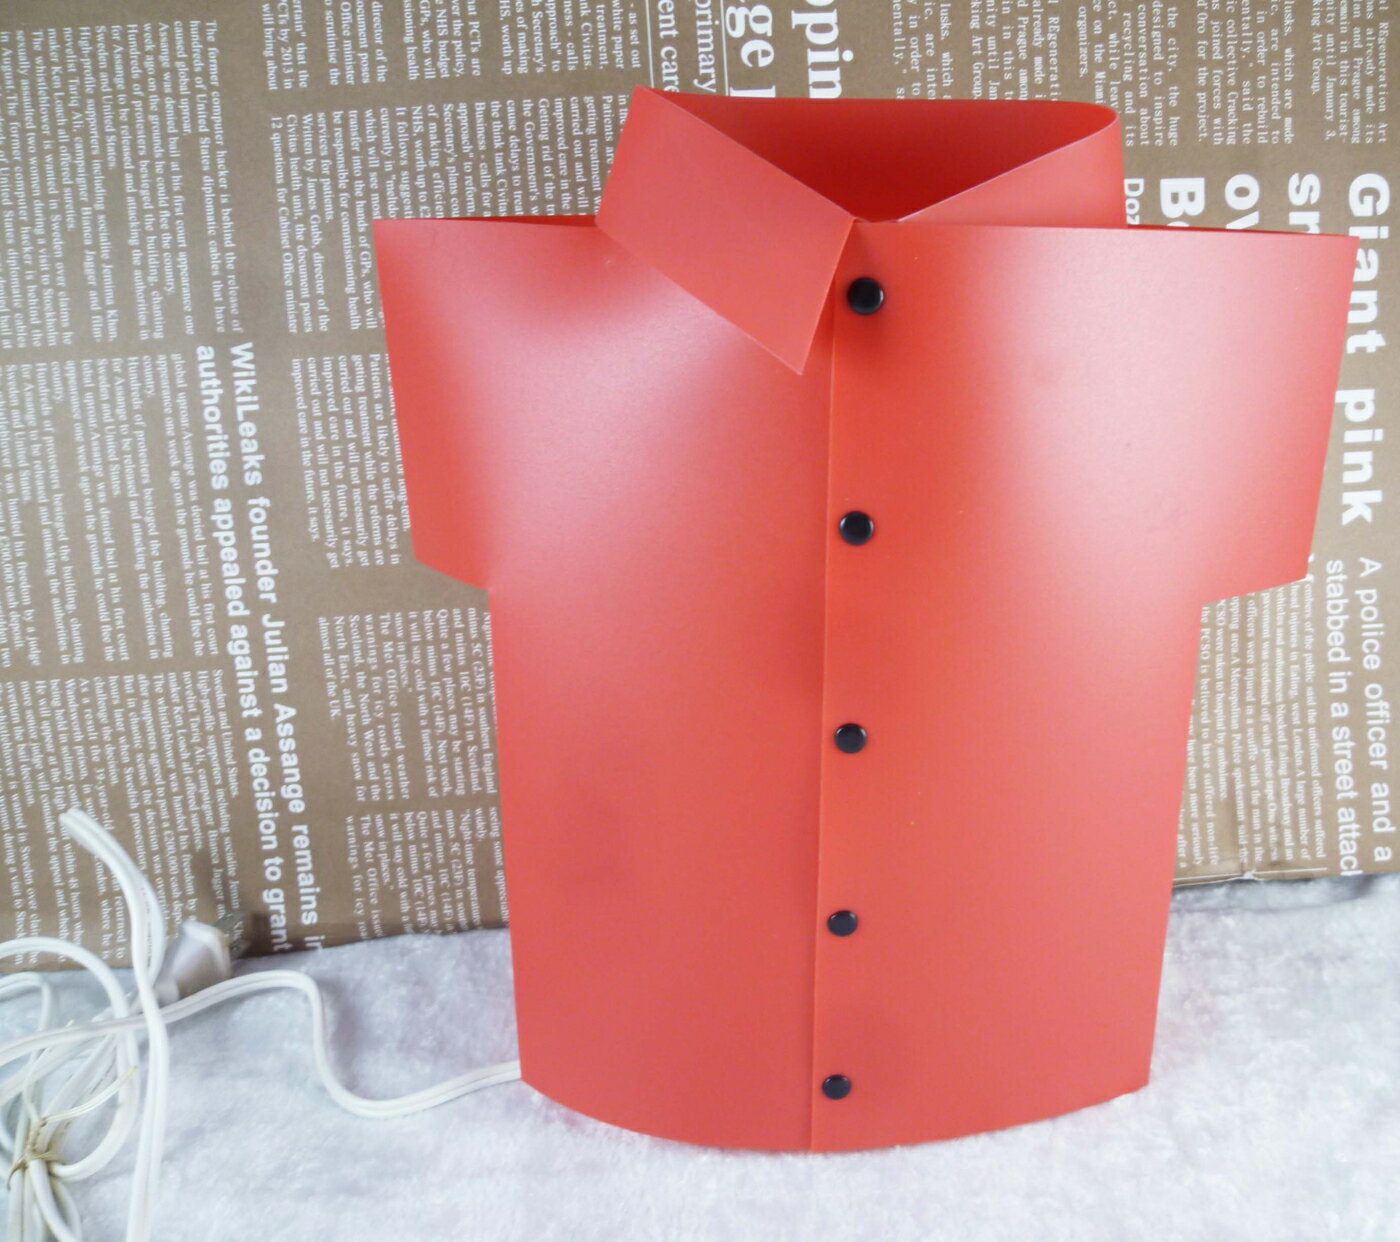 【震撼精品百貨】Hello Kitty 凱蒂貓 造型燈-紅衣【共1款】 震撼日式精品百貨